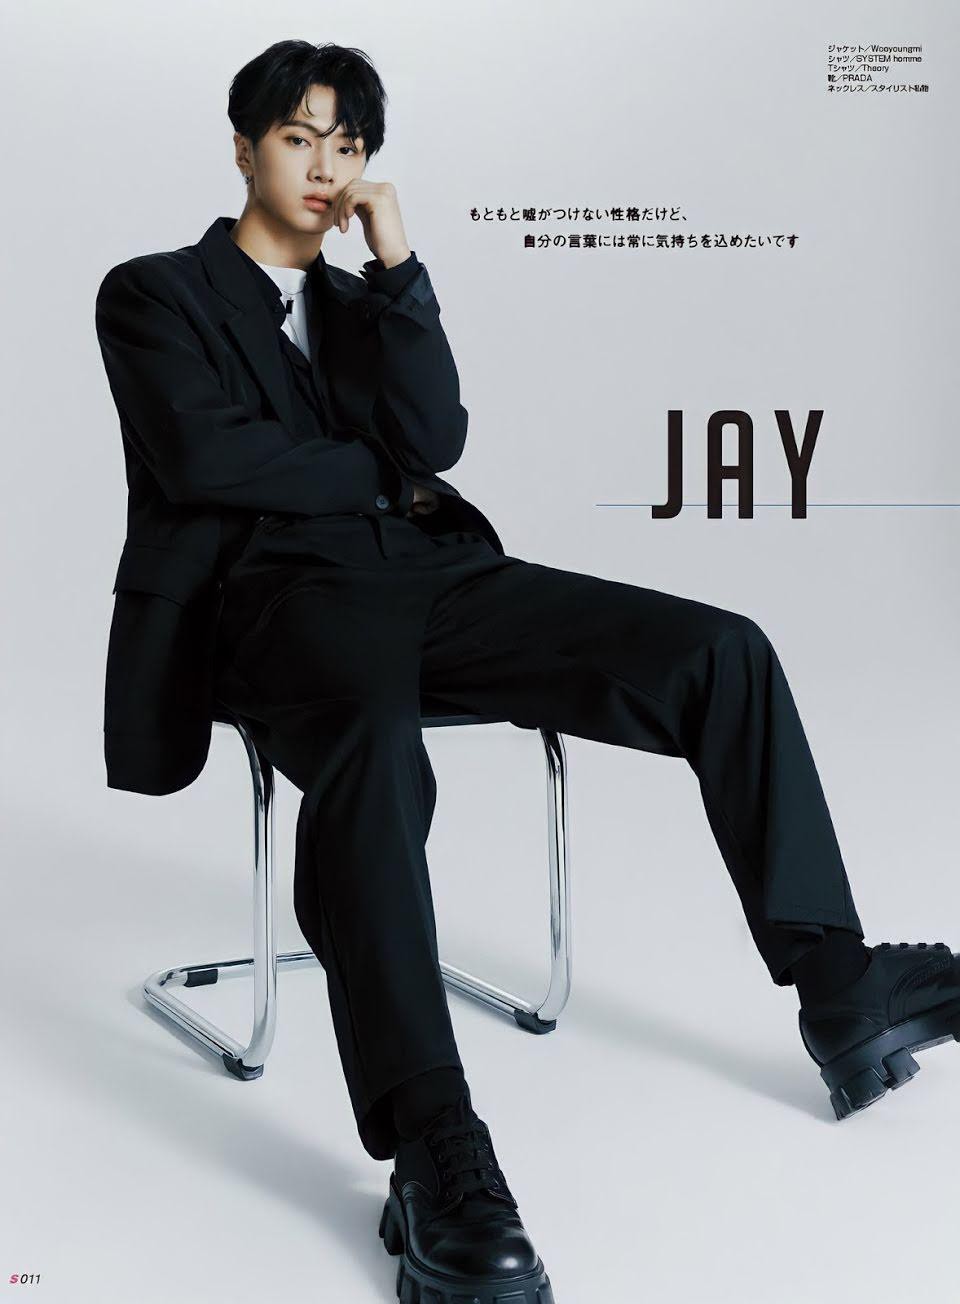 Thành viên nhóm nhạc nam nhà HYBE - Jay (ENHYPEN) lên tiếng xin lỗi sau drama phát ngôn Lịch sử Hàn Quốc ngắn